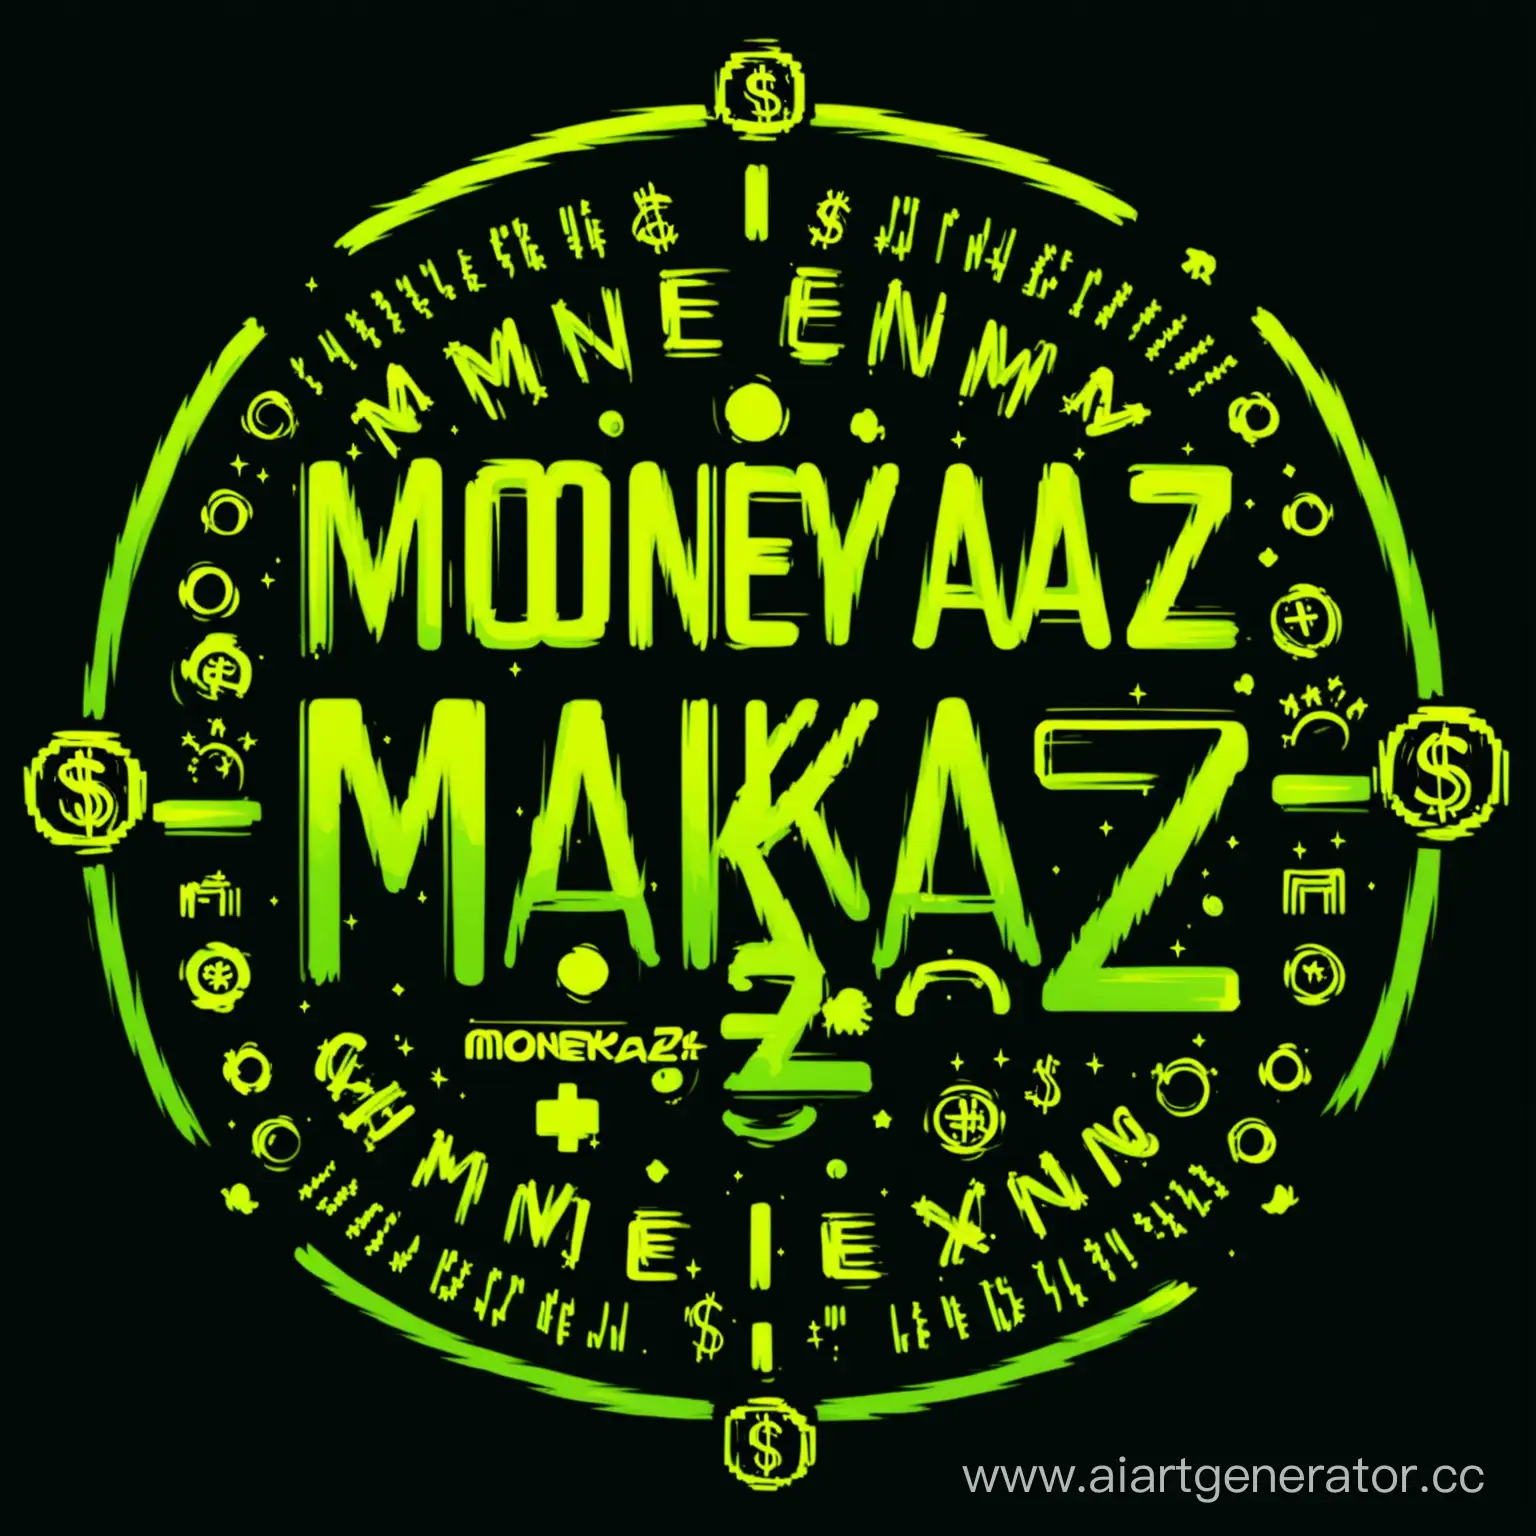 Moneykazz-Logo-Illuminated-on-Black-Background